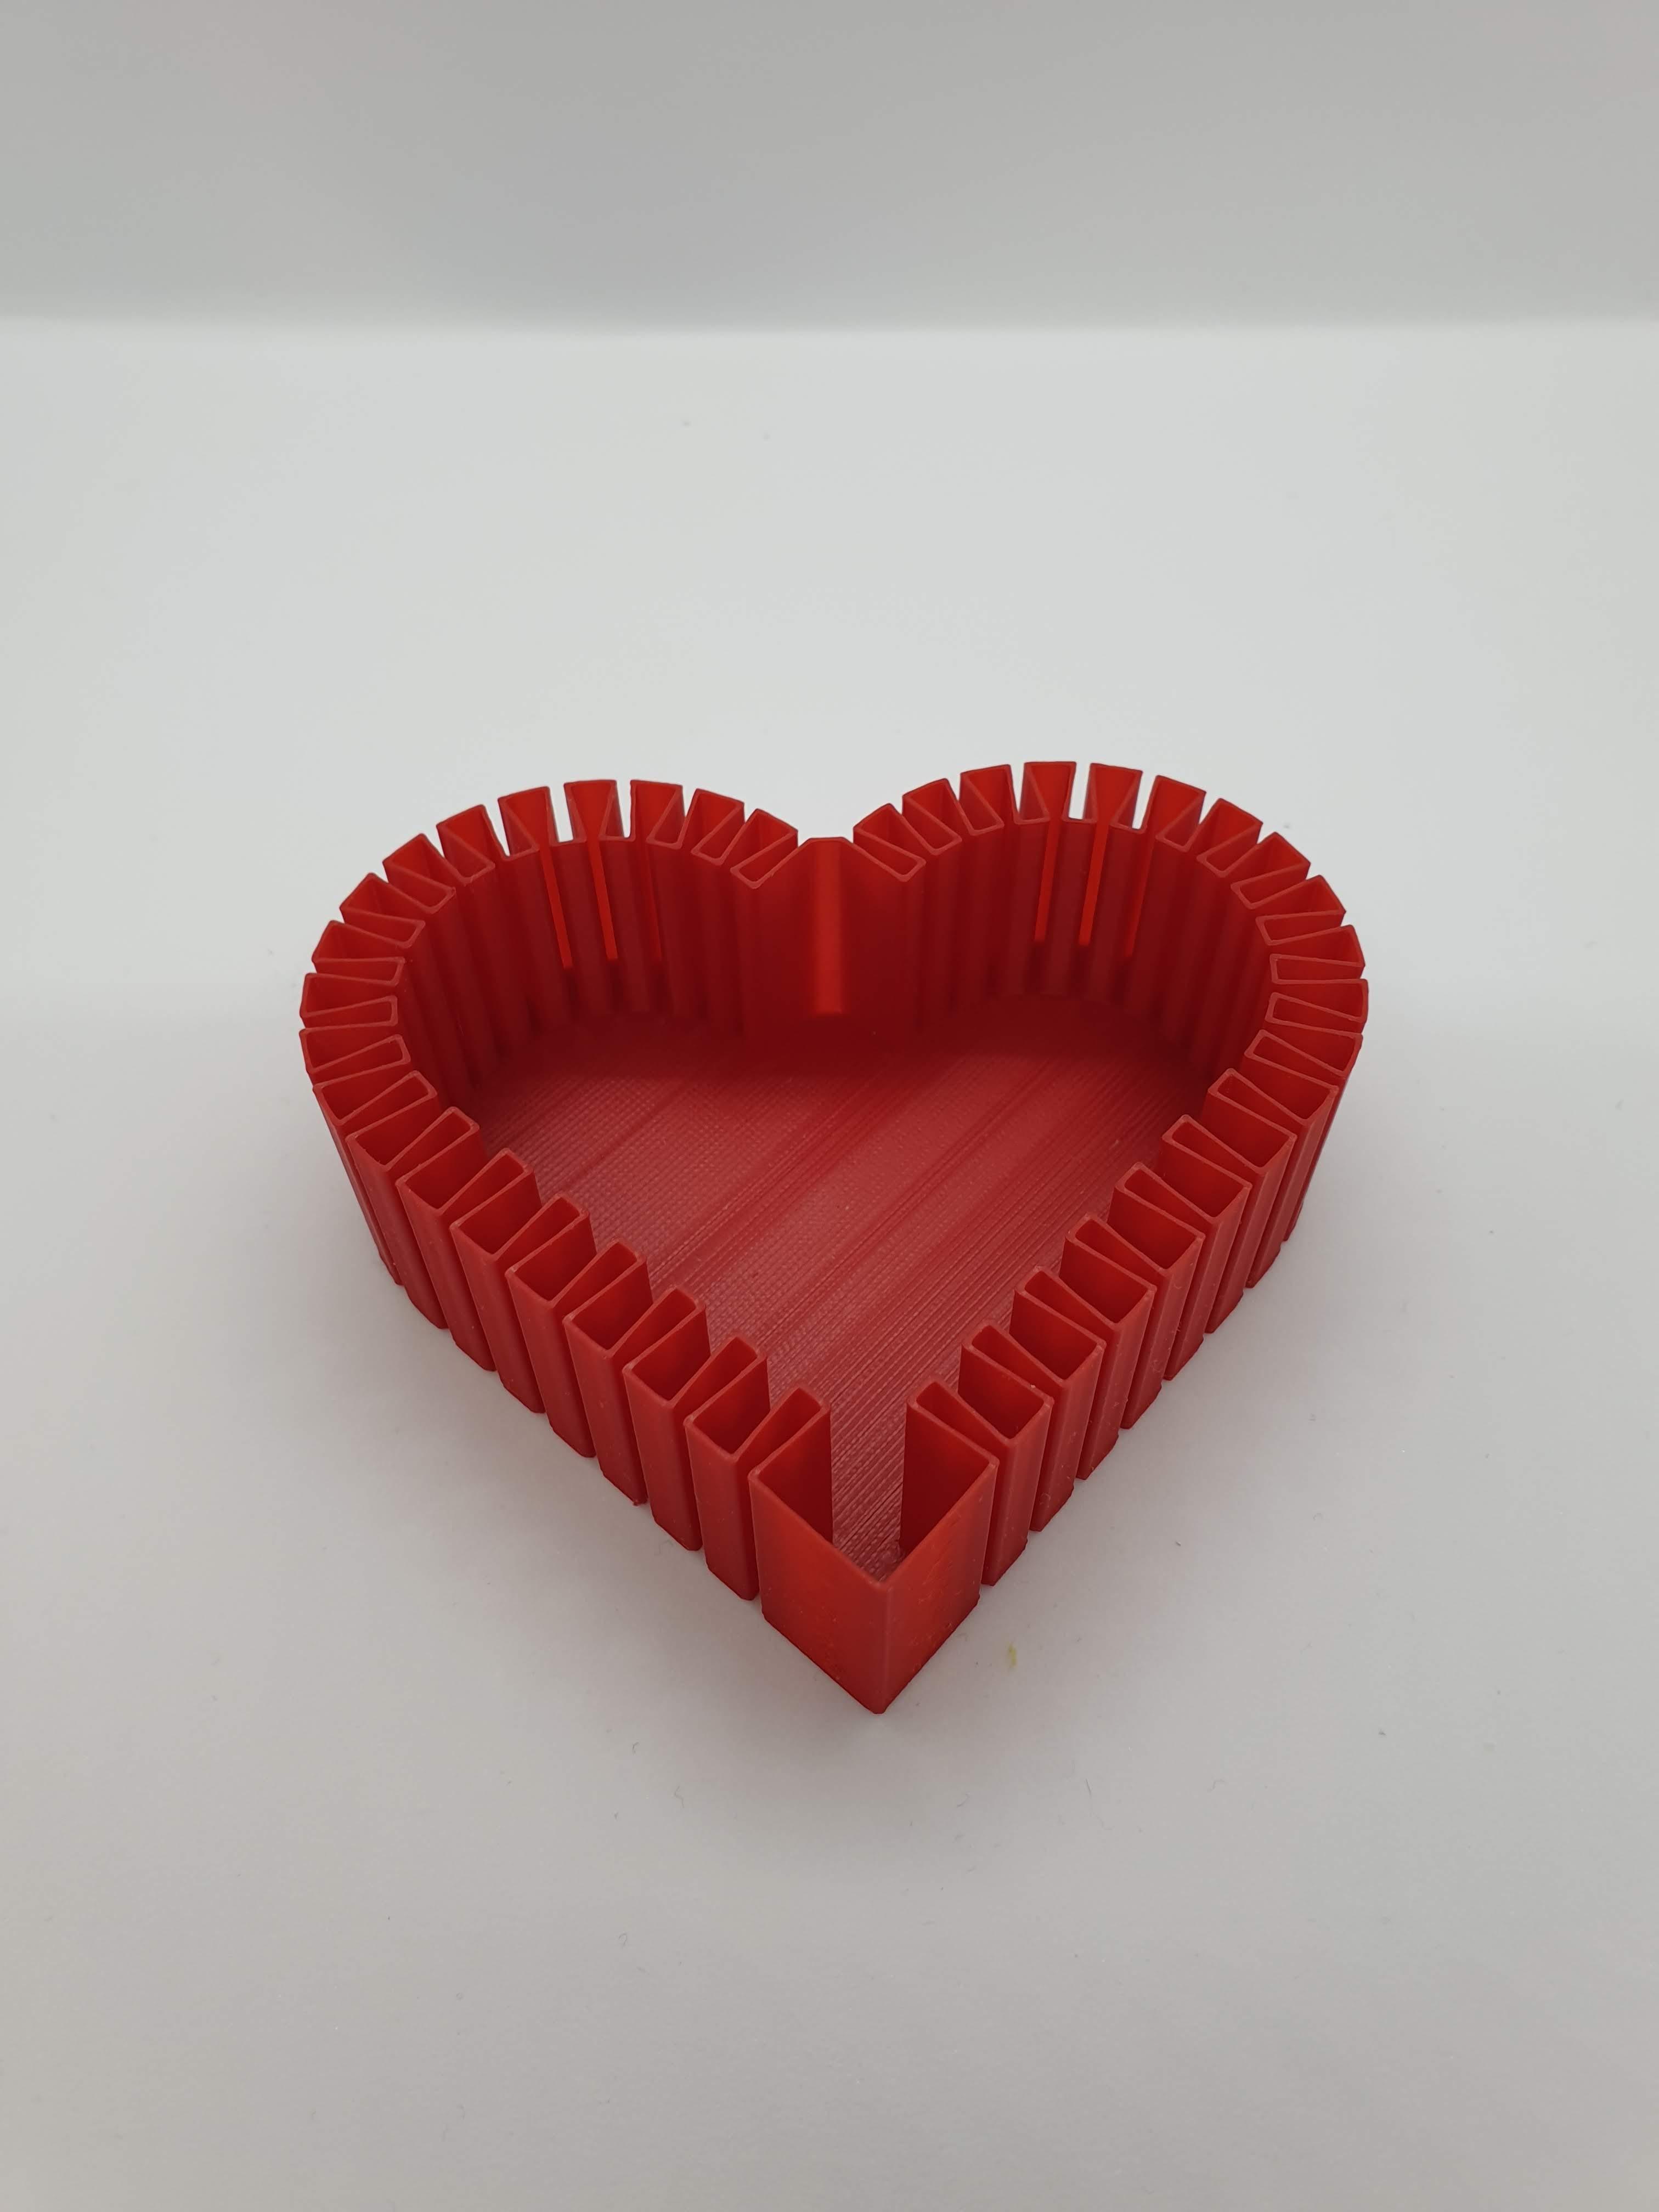 Flexi-Heart || Vase Mode 3d model